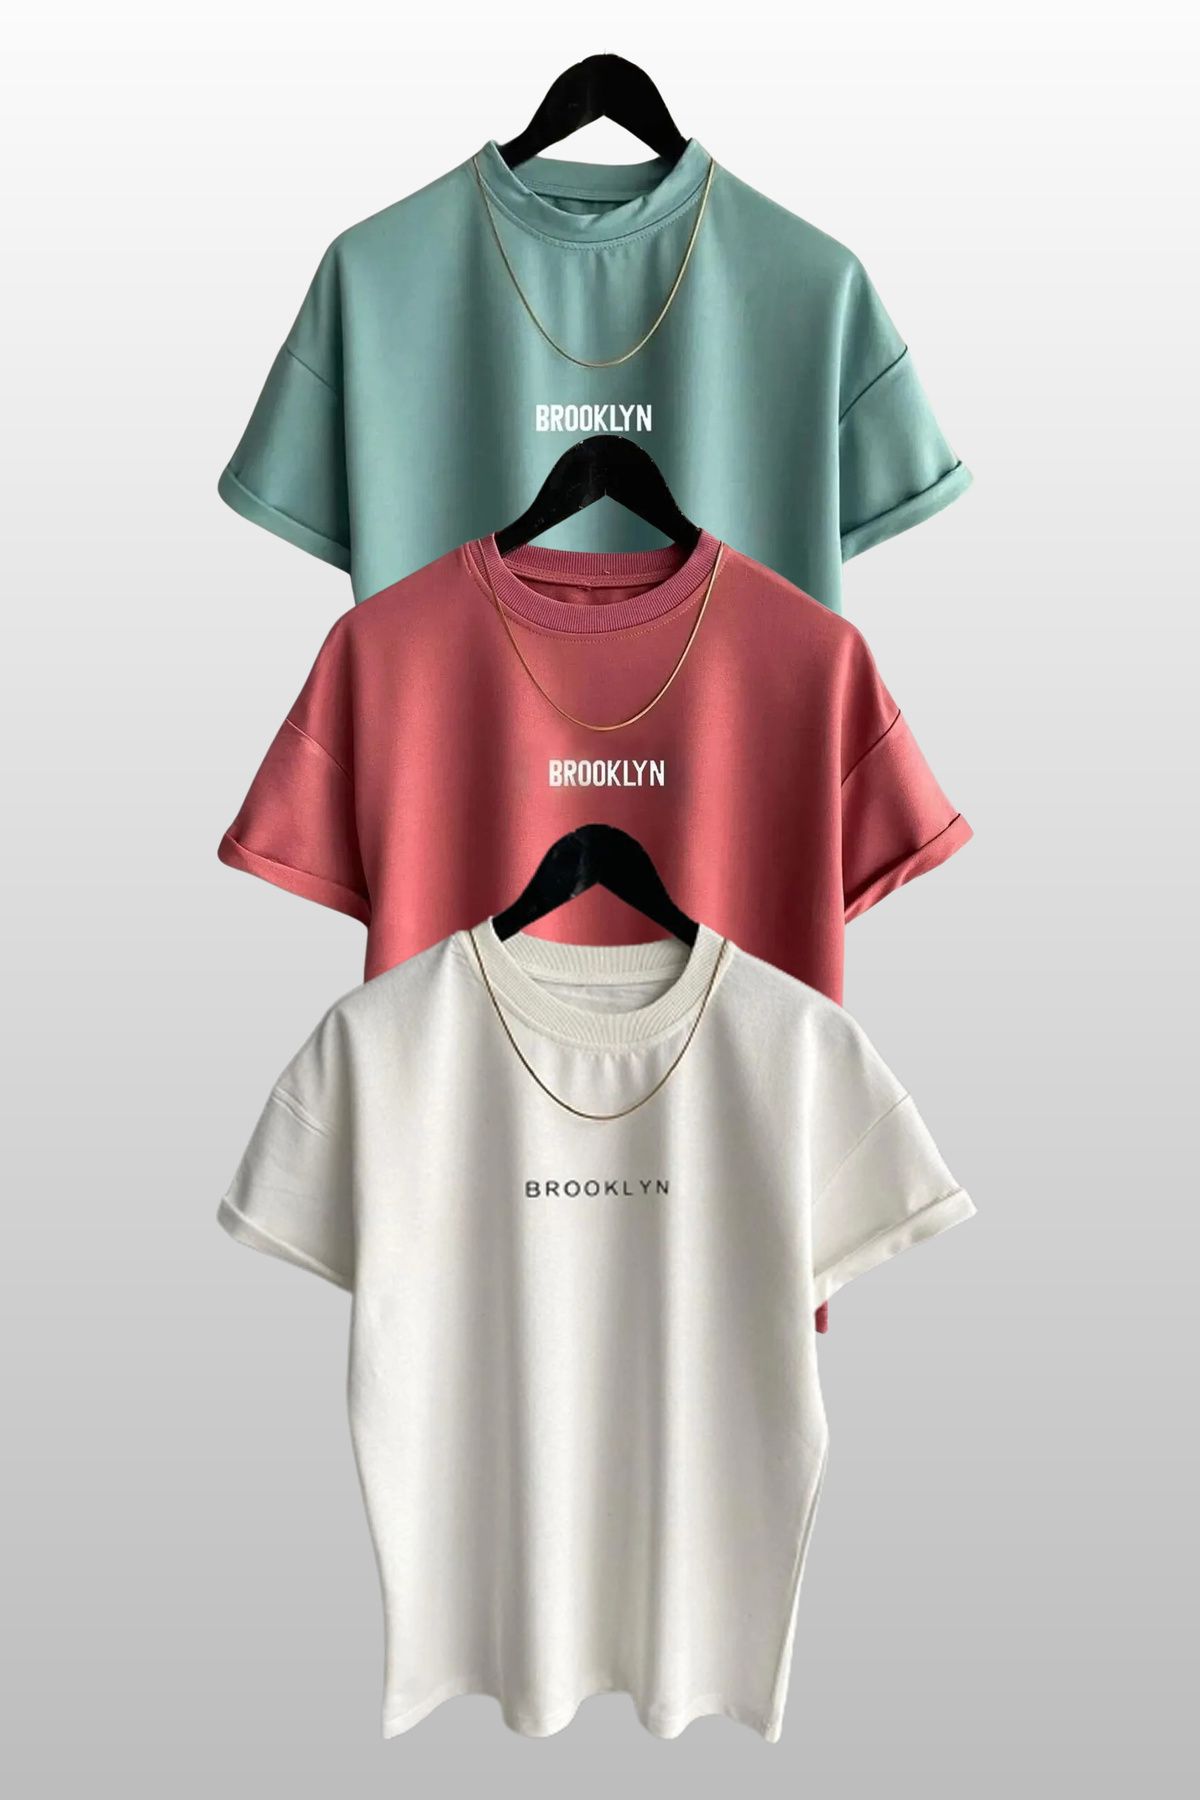 MODAGEN Unisex Brooklyn Baskılı 3lü Paket Beyaz-Gül Kurusu-Mint T-shirt